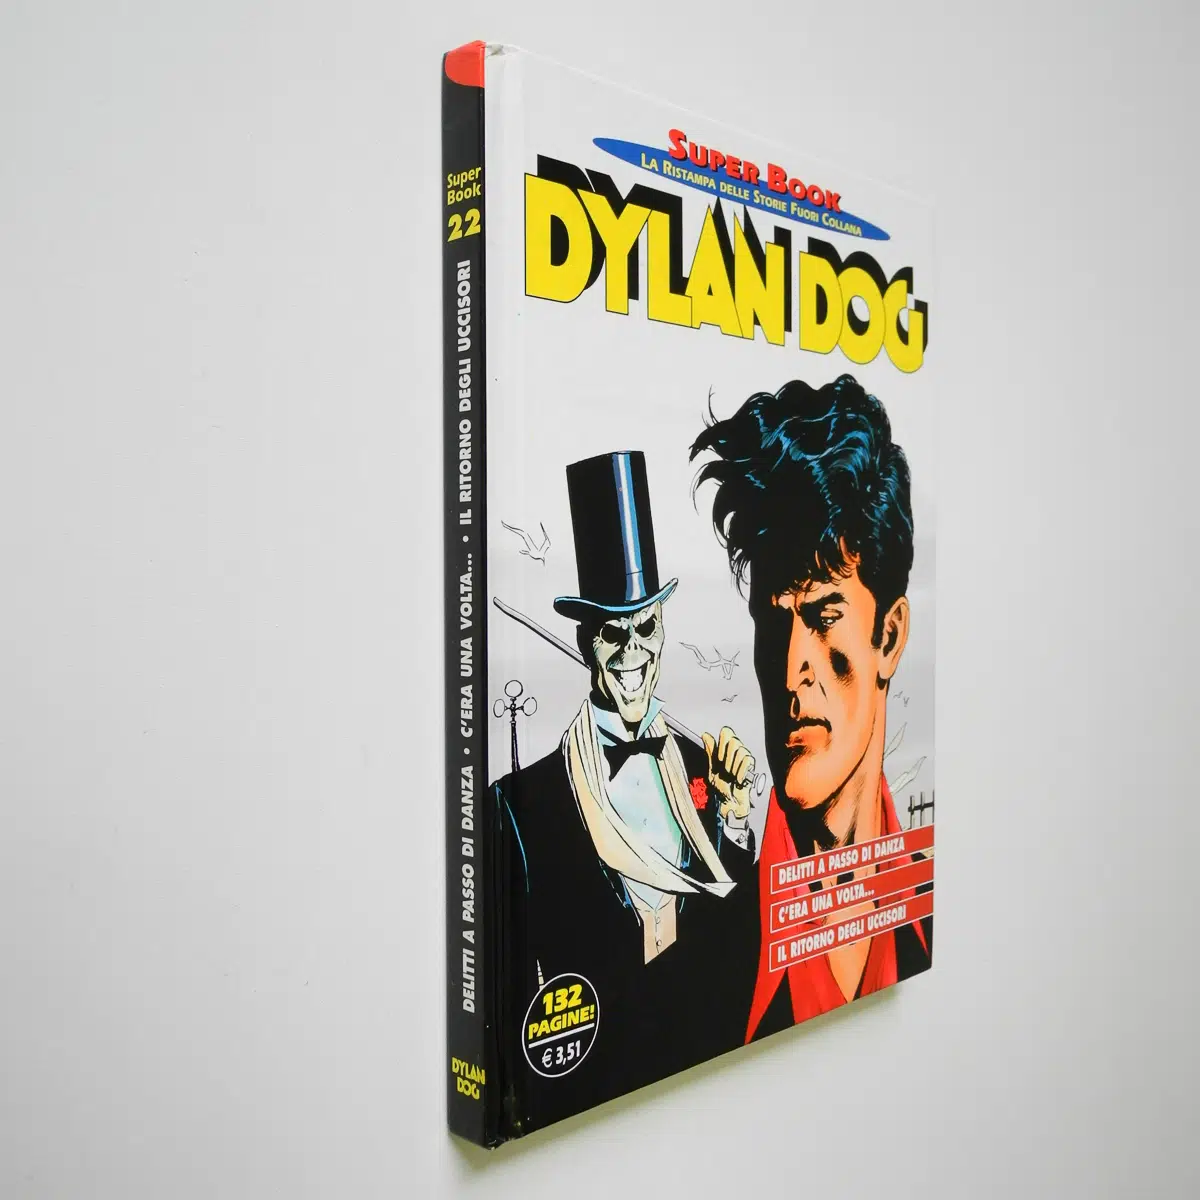 Dylan Dog Super Book 22 Delitti a passo di danza